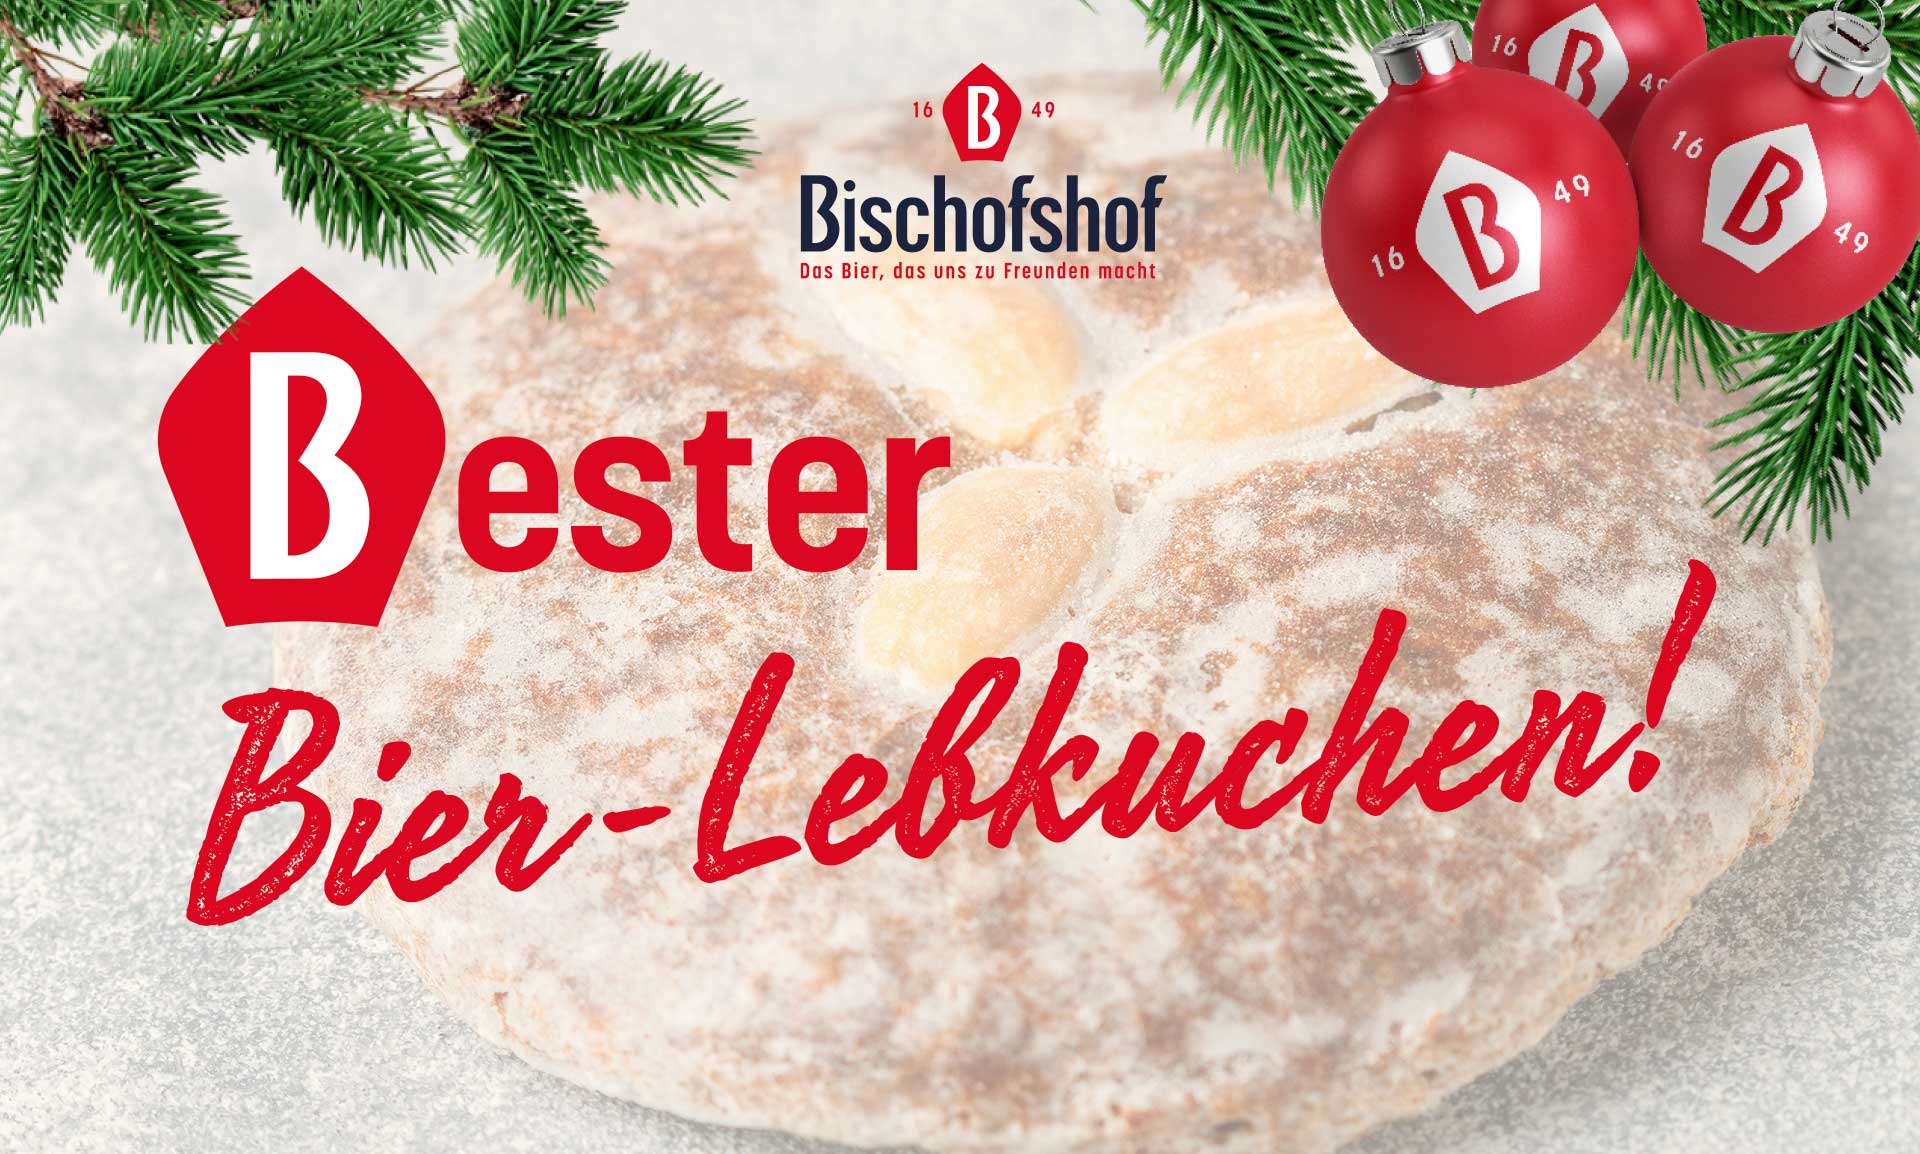 Bischofshof-Bester-Bier-Lebkuchen